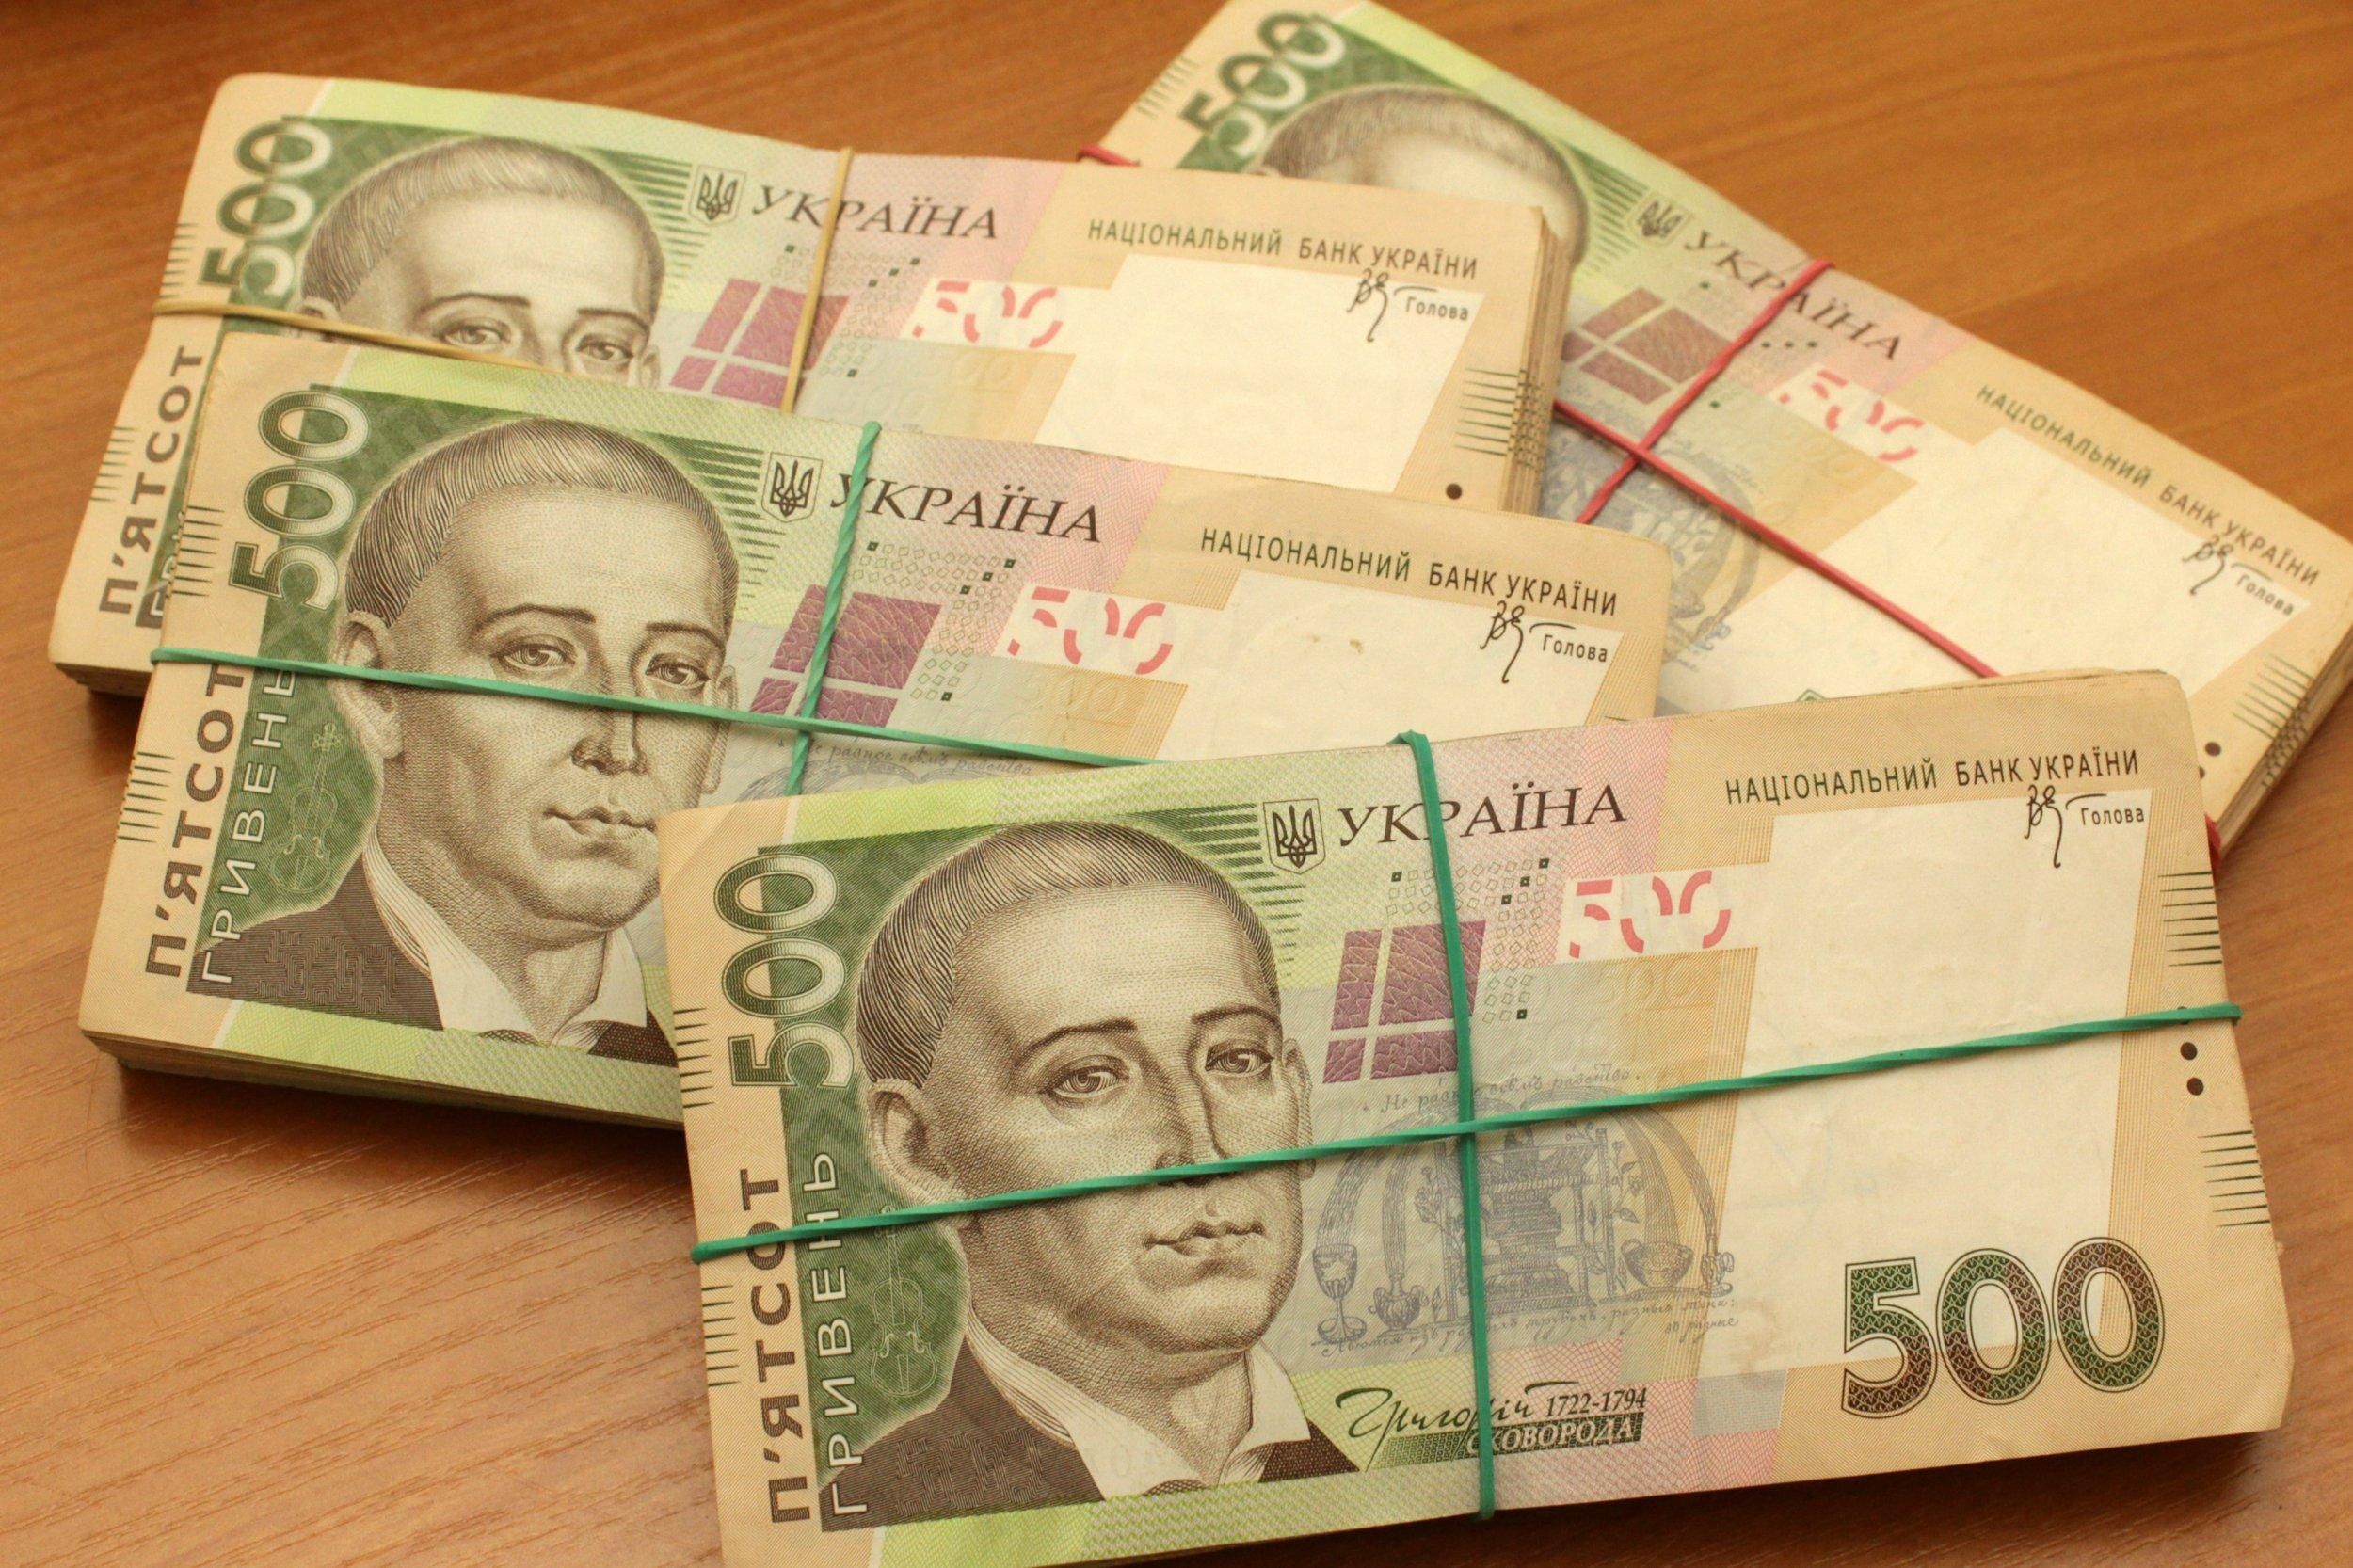 Афера на 15 миллионов гривен: во Львове осудили злоумышленницу